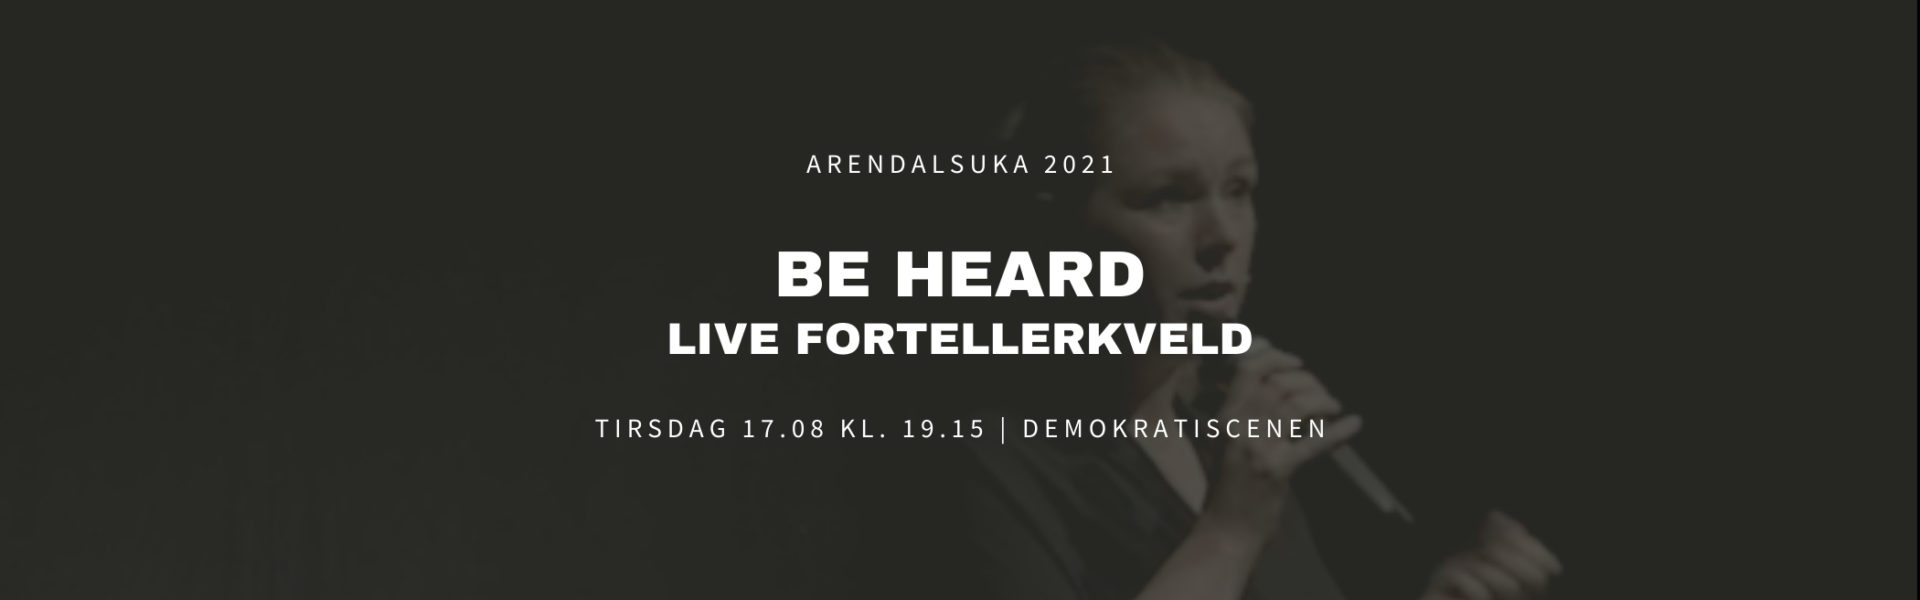 Arendalsuka BE HEARD nettside event